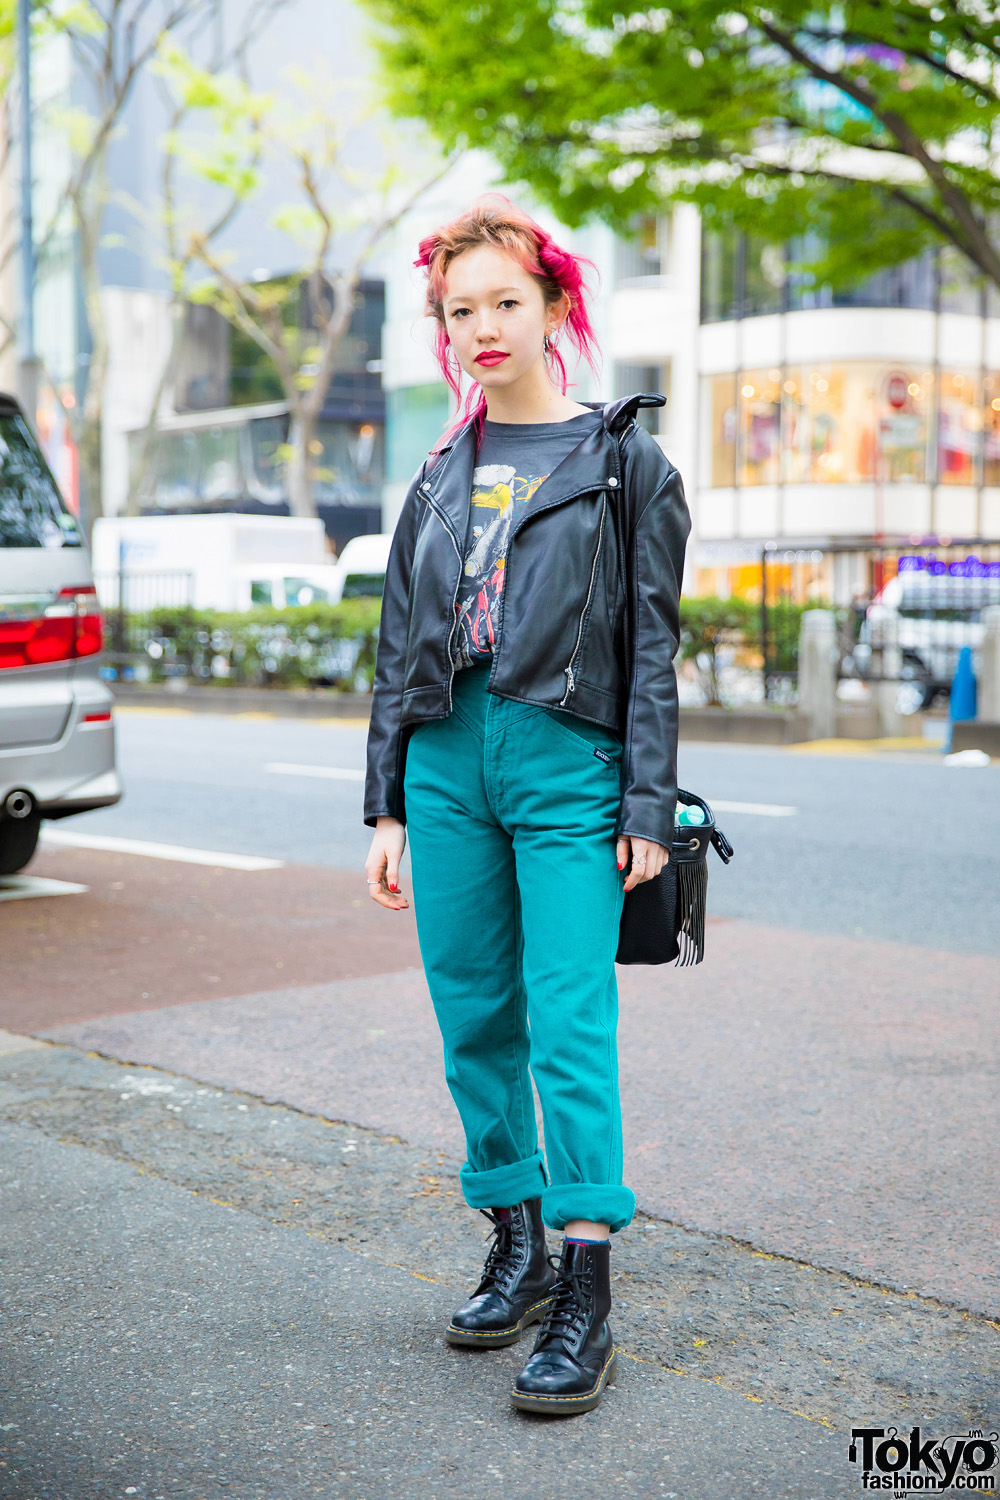 Vintage Tokyo Streetwear Style w/ Pink Hair, GU Leather Jacket, Global Work Bag, Dr. Martens Boots & Kinji Rings